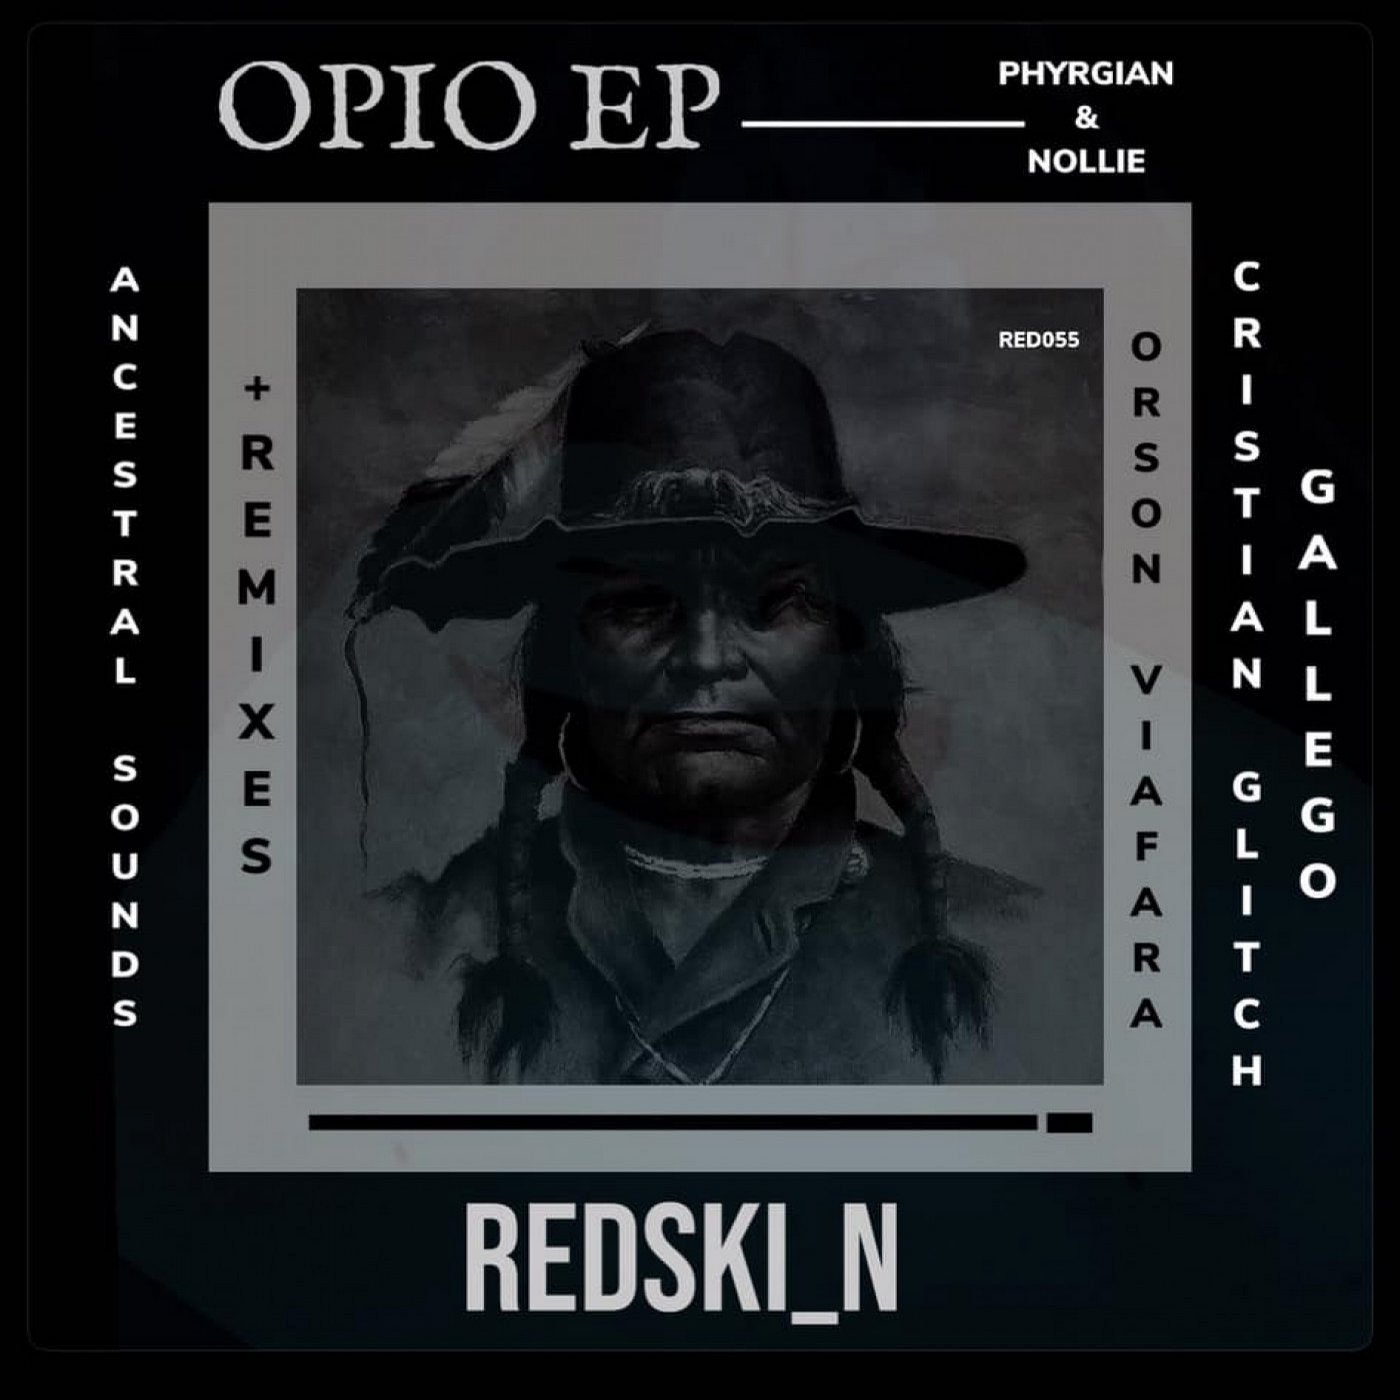 OPIO EP + REMIXES